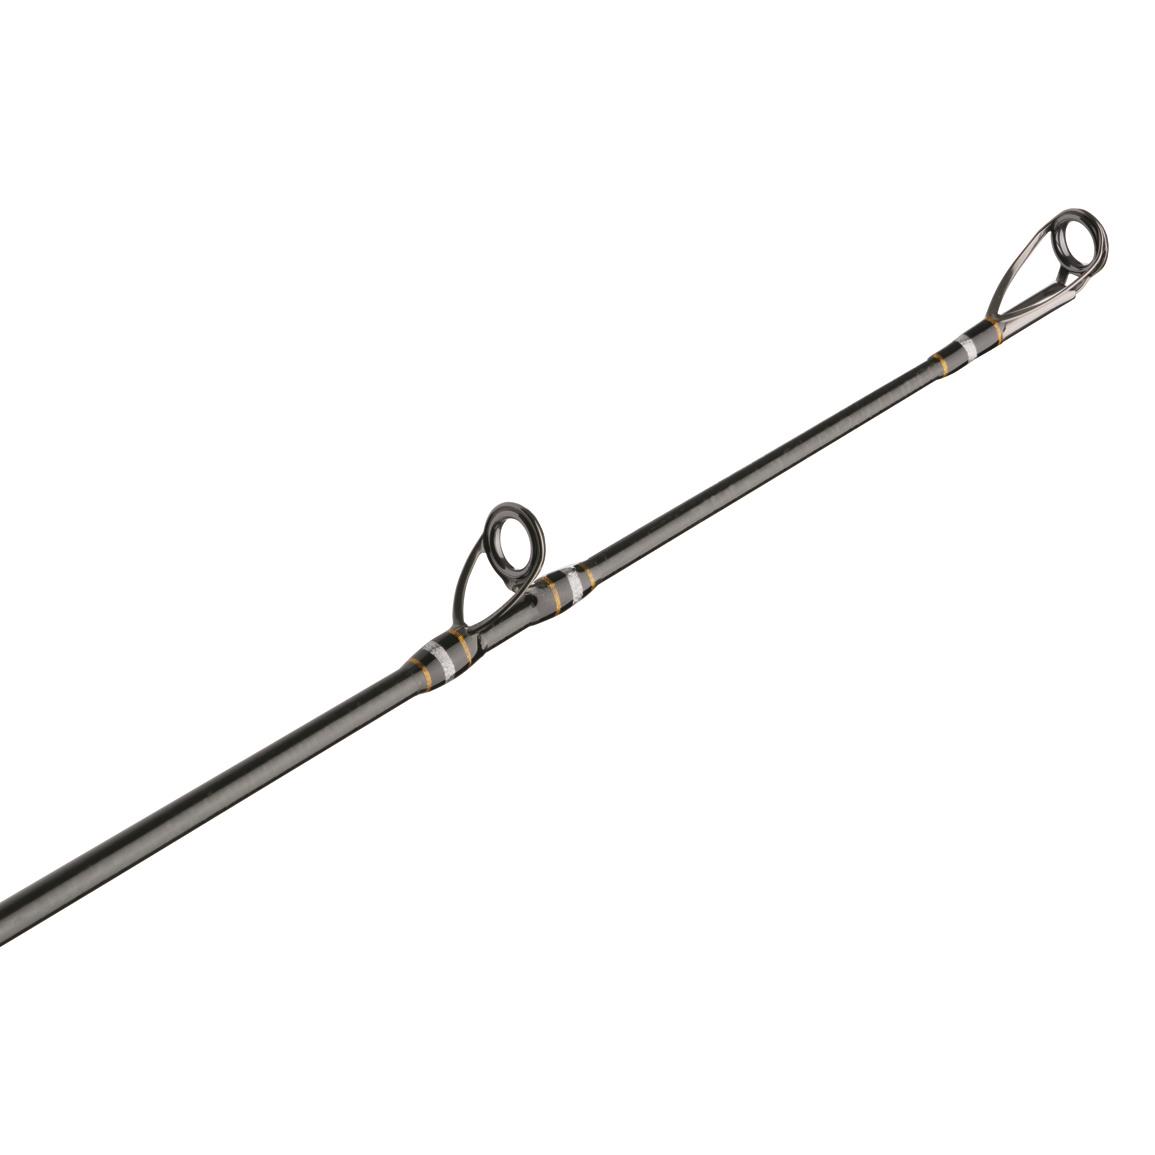 Shimano SLX A Swimbait Casting Rod, 7'3 Length, Medium Heavy